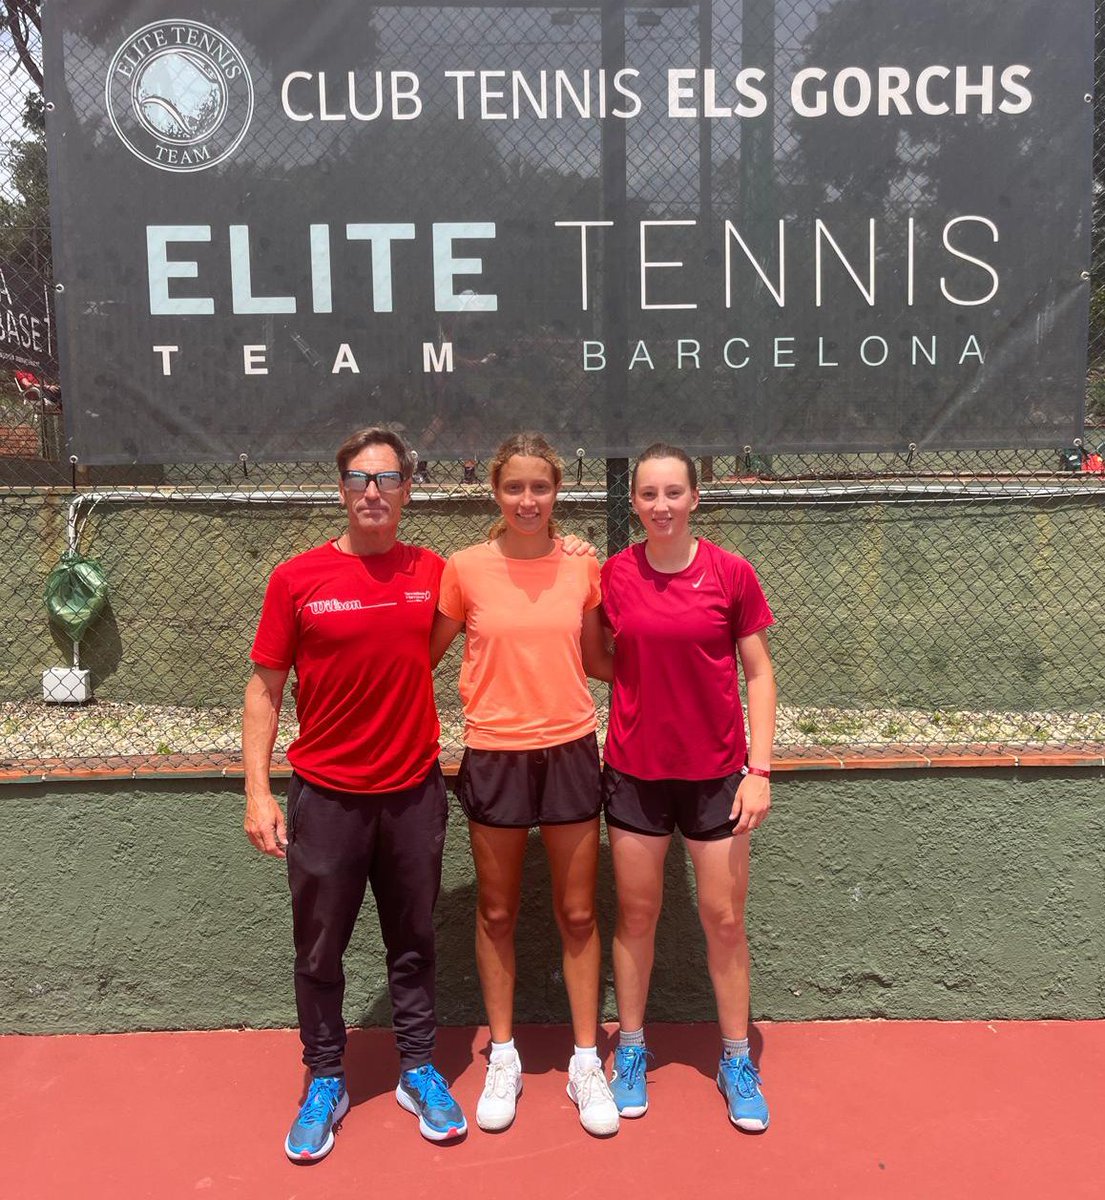 🎾 Cèlia Torrelles, semifinalista de dobles a l’ITF Junior de Les Franqueses del Vallès 🏆

💪🏽 Felicitem la nostra jugadora per aquest excel·lent resultat fent parella amb Alba Sallés 👏🏽

ℹ️ lc.cx/bZUcCJ